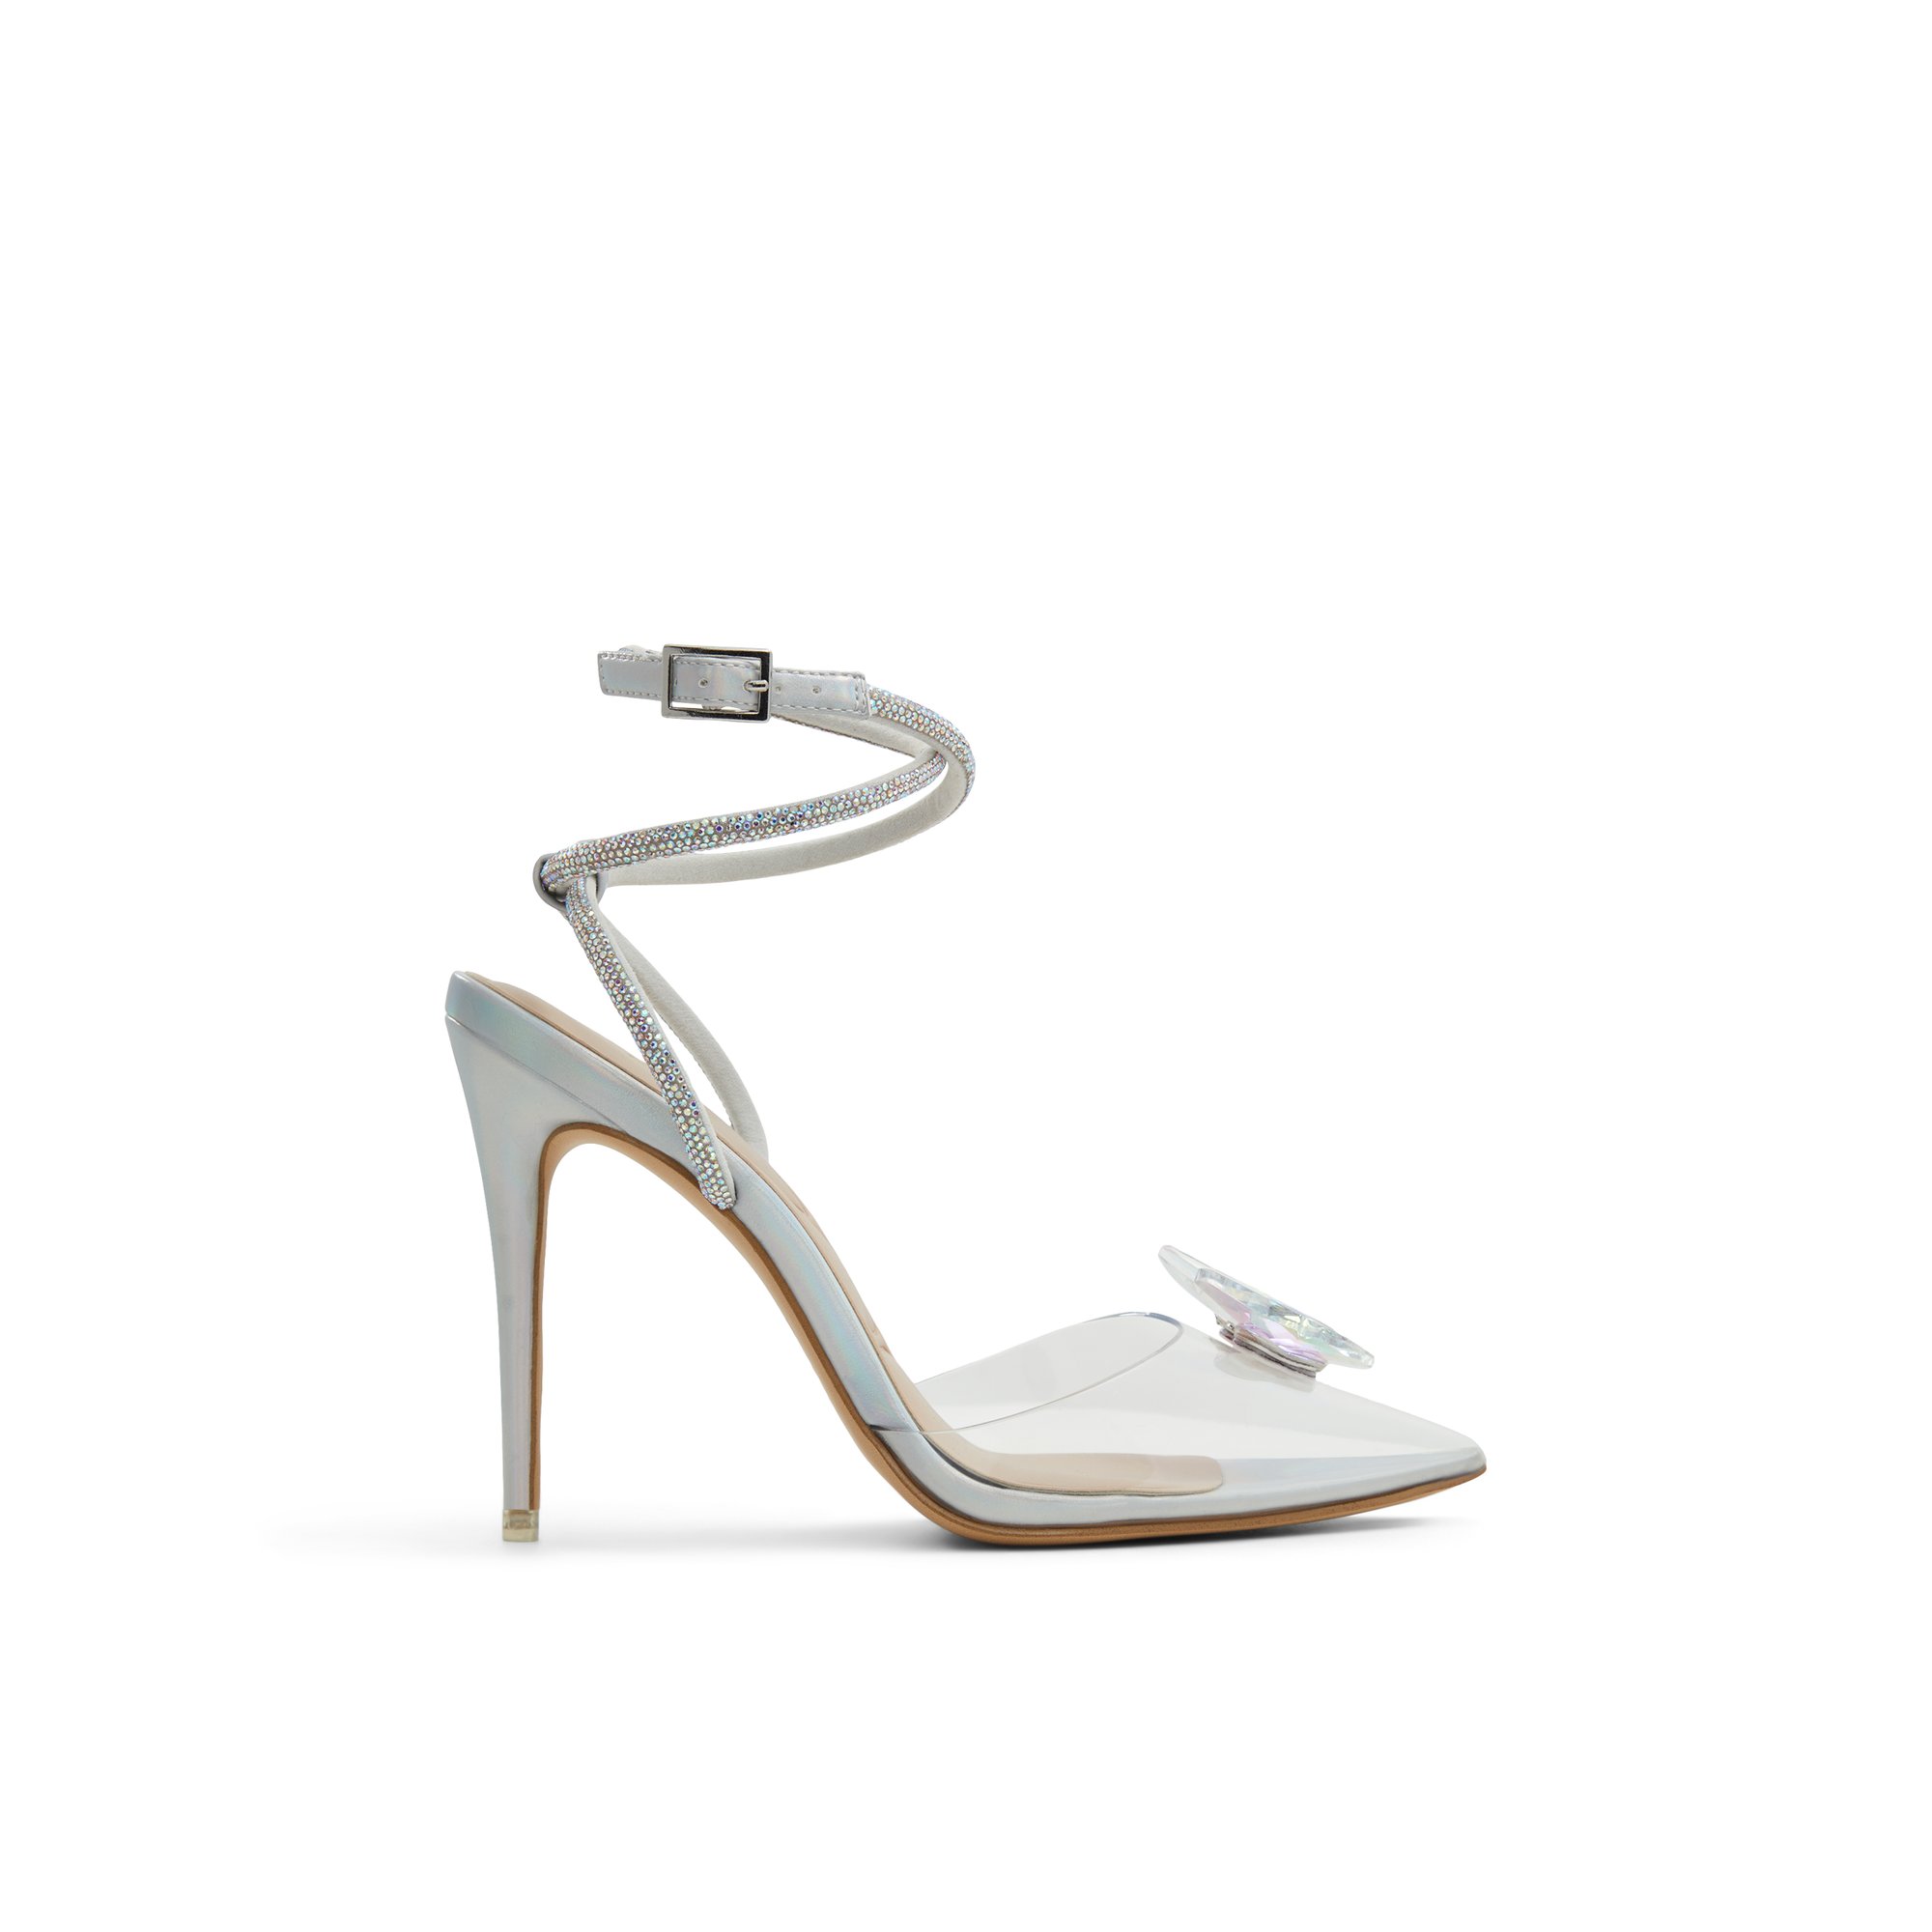 ALDO Chrysalis - Women's Strappy Sandal Sandals - Silver